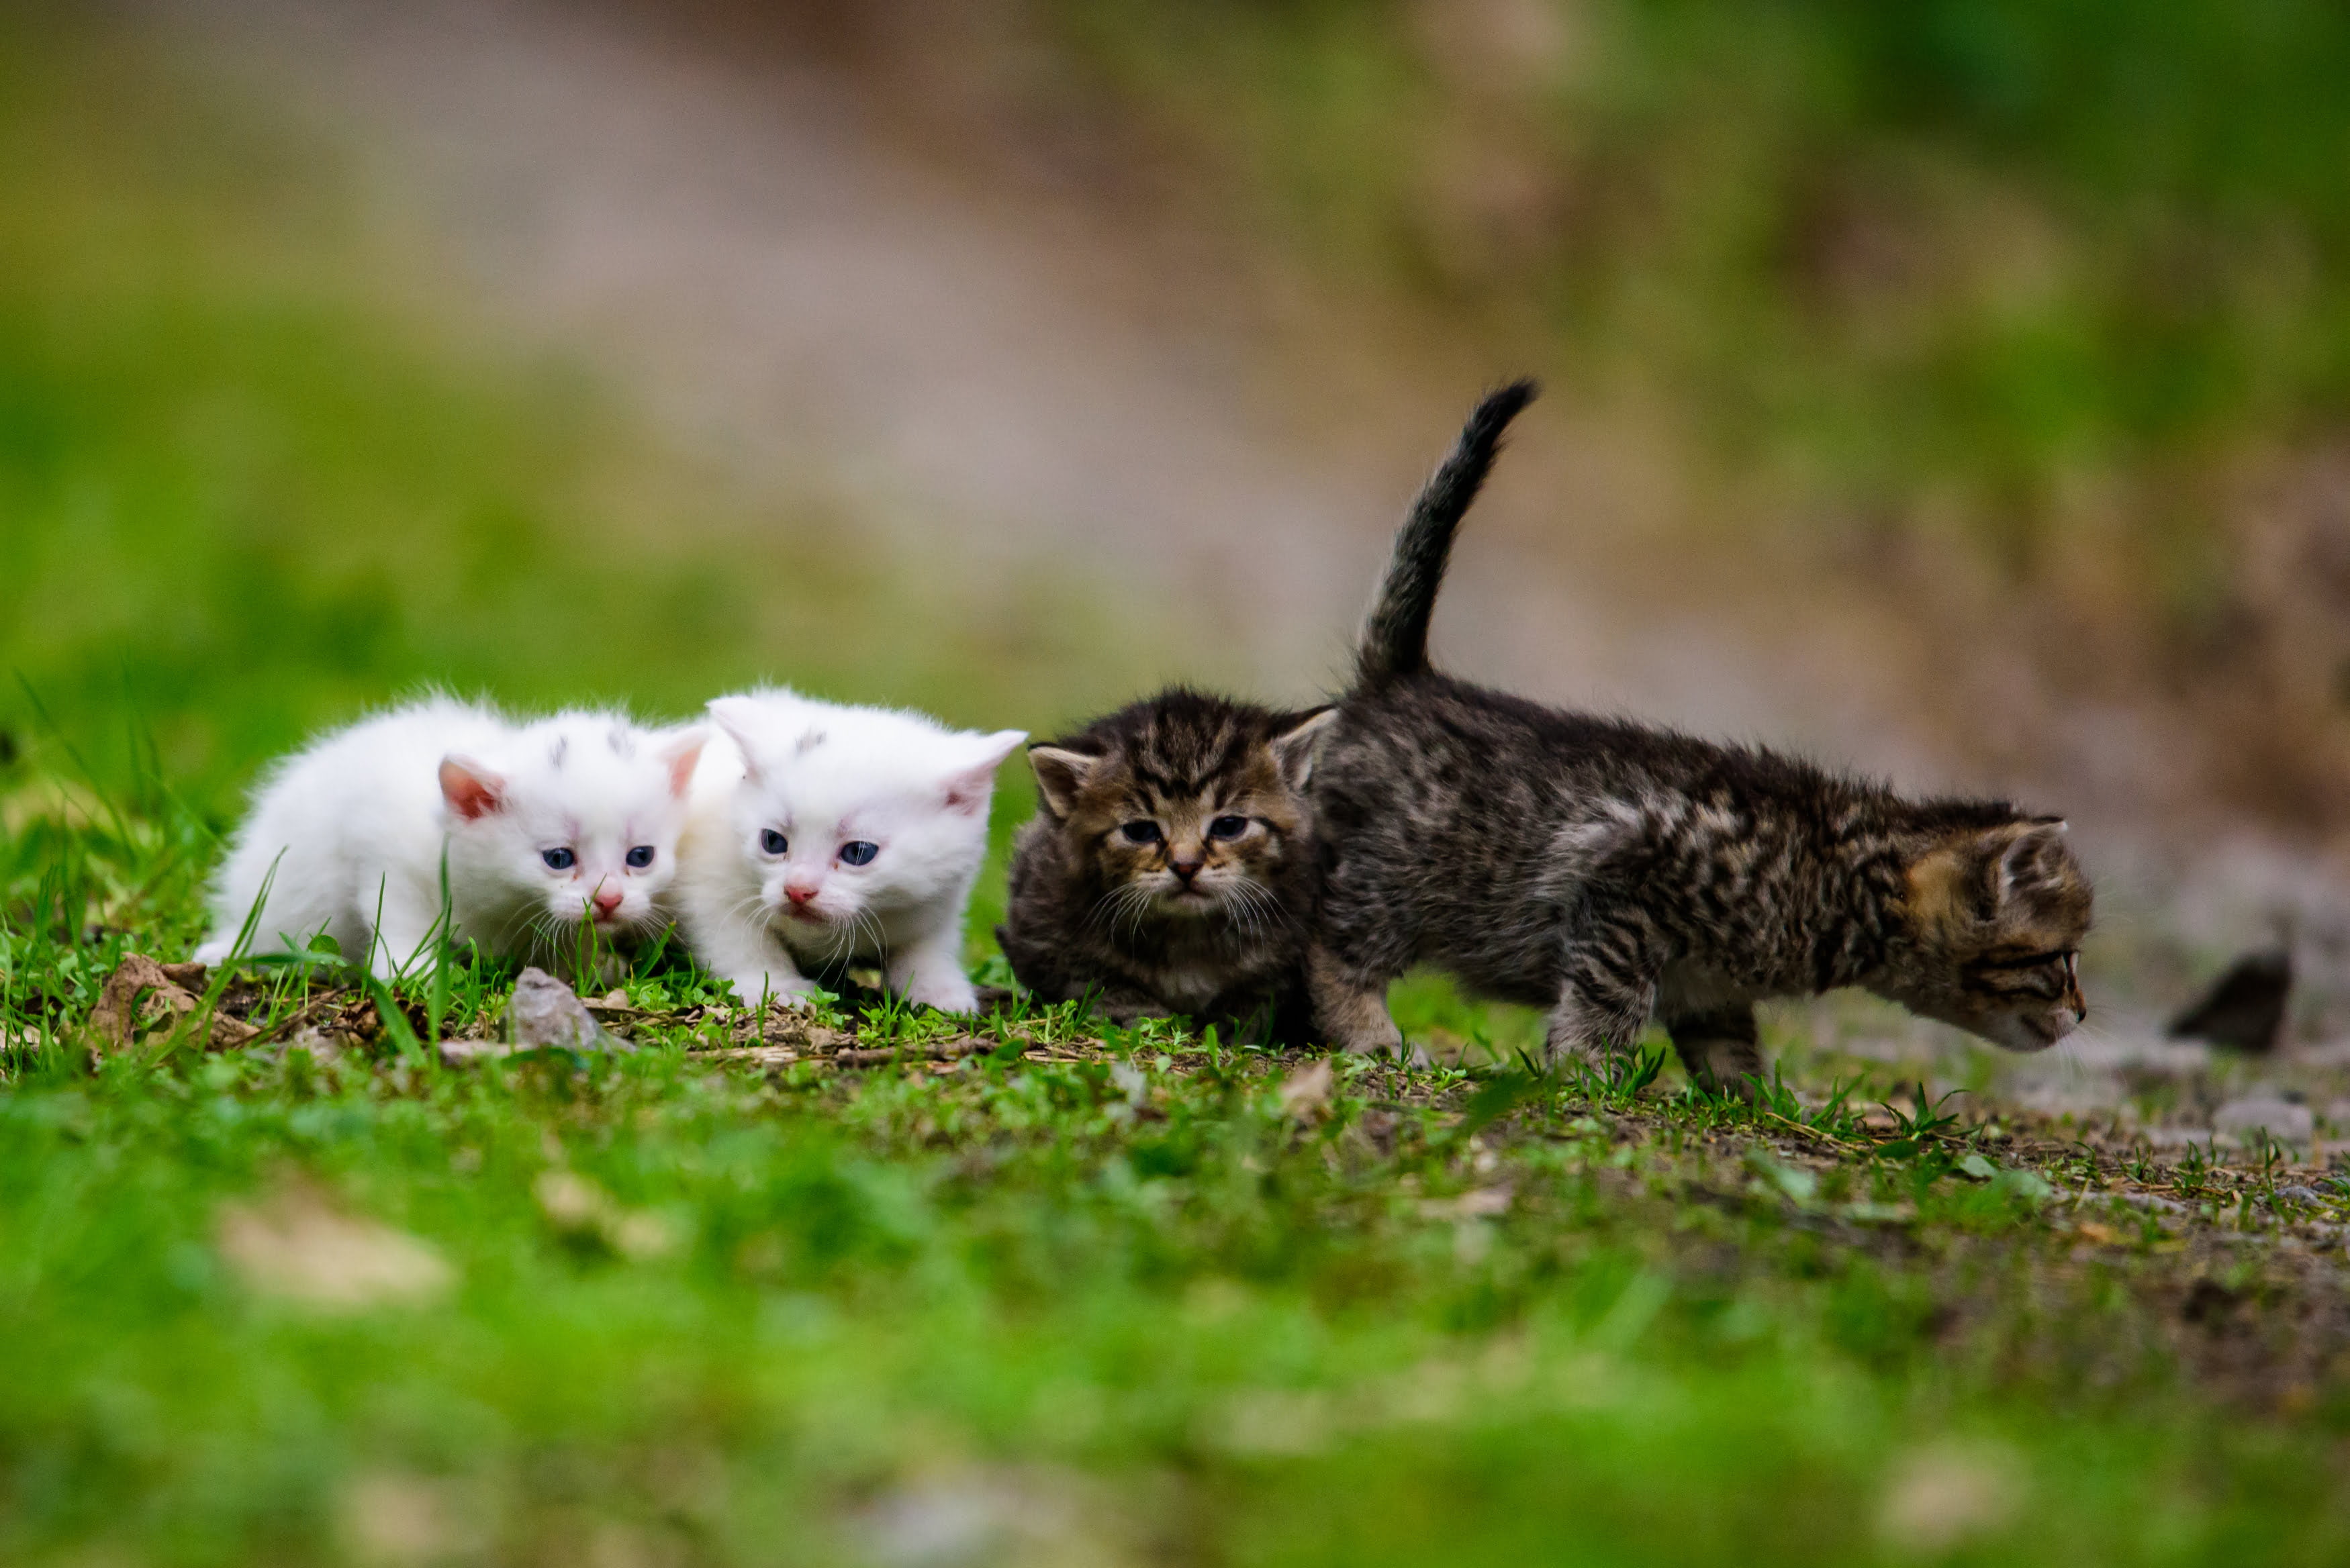 Finding Kittens